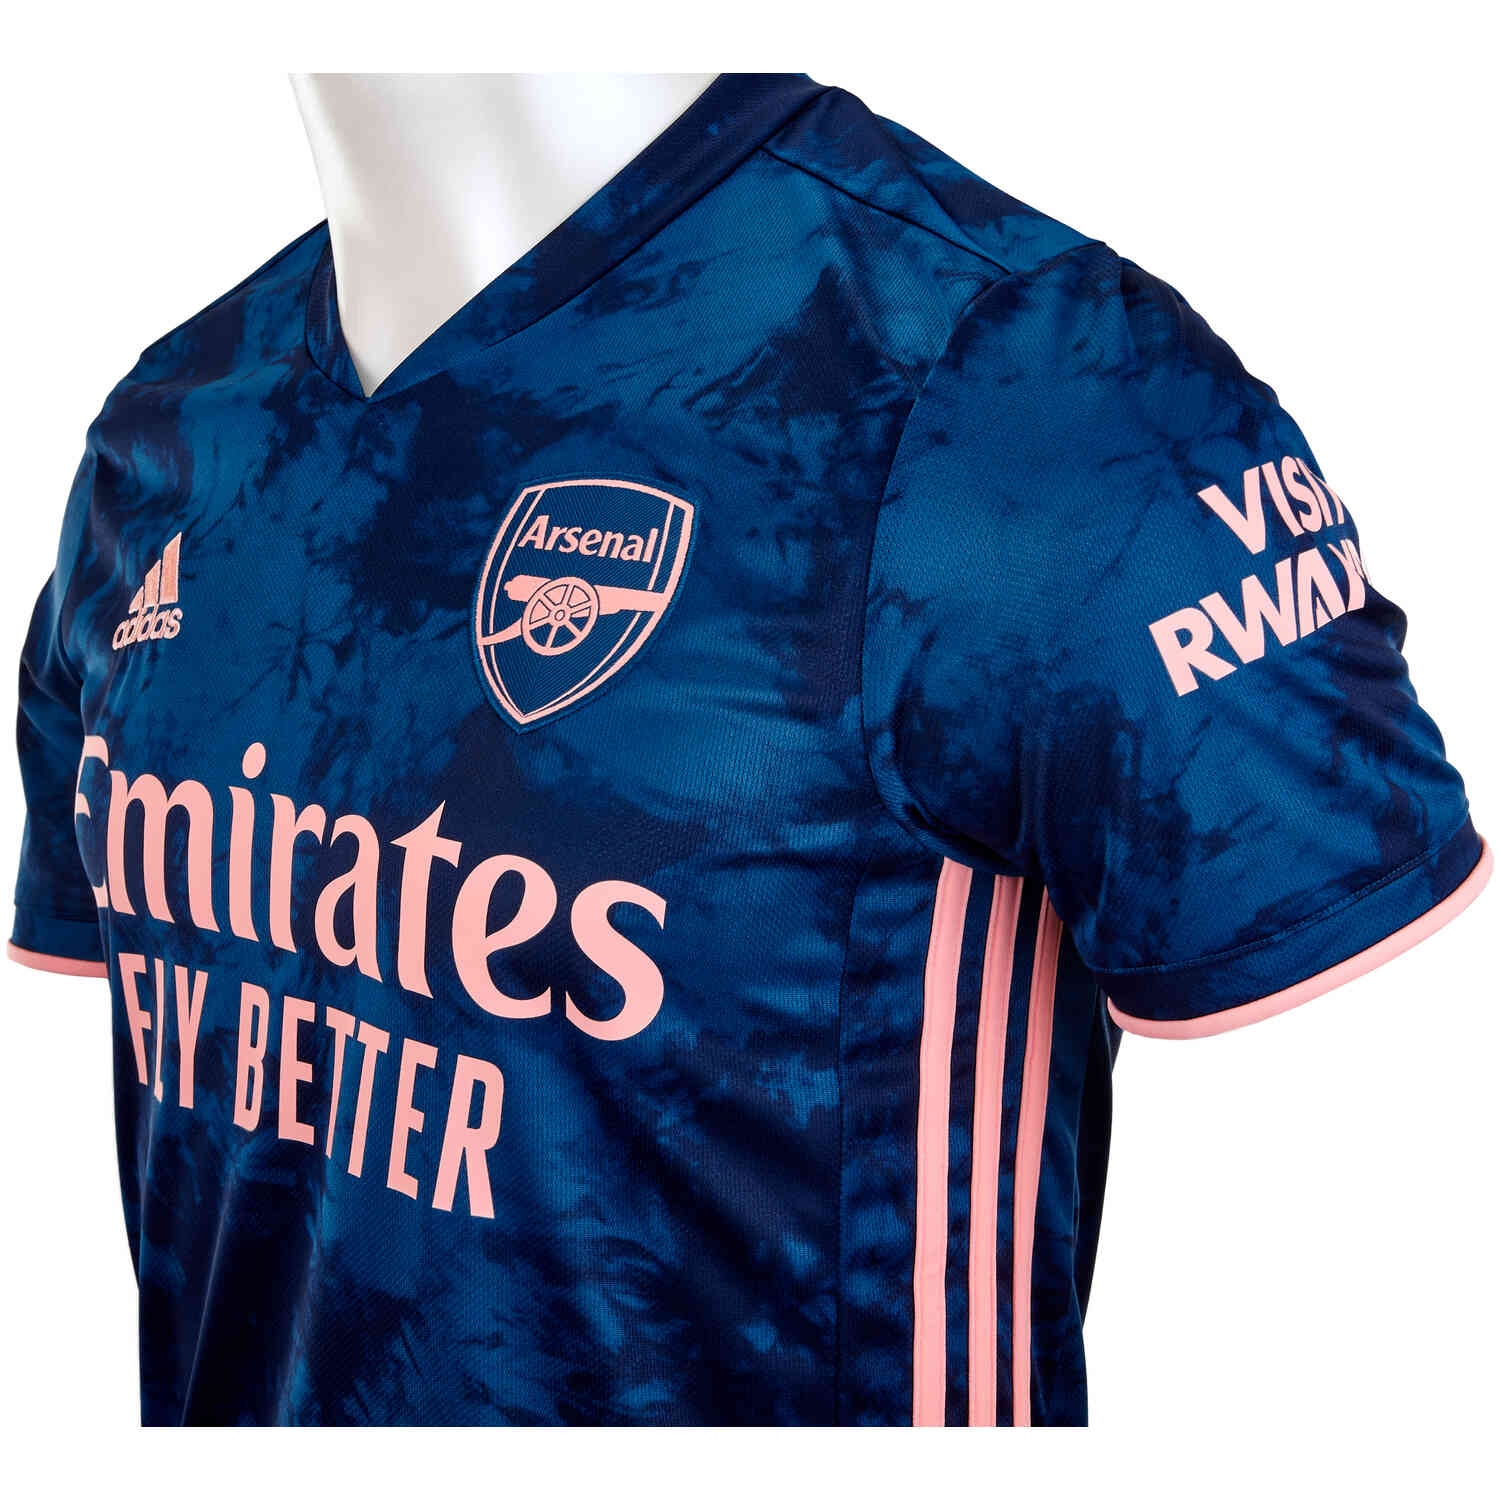 Arsenal 2020 3rd Kit | lupon.gov.ph